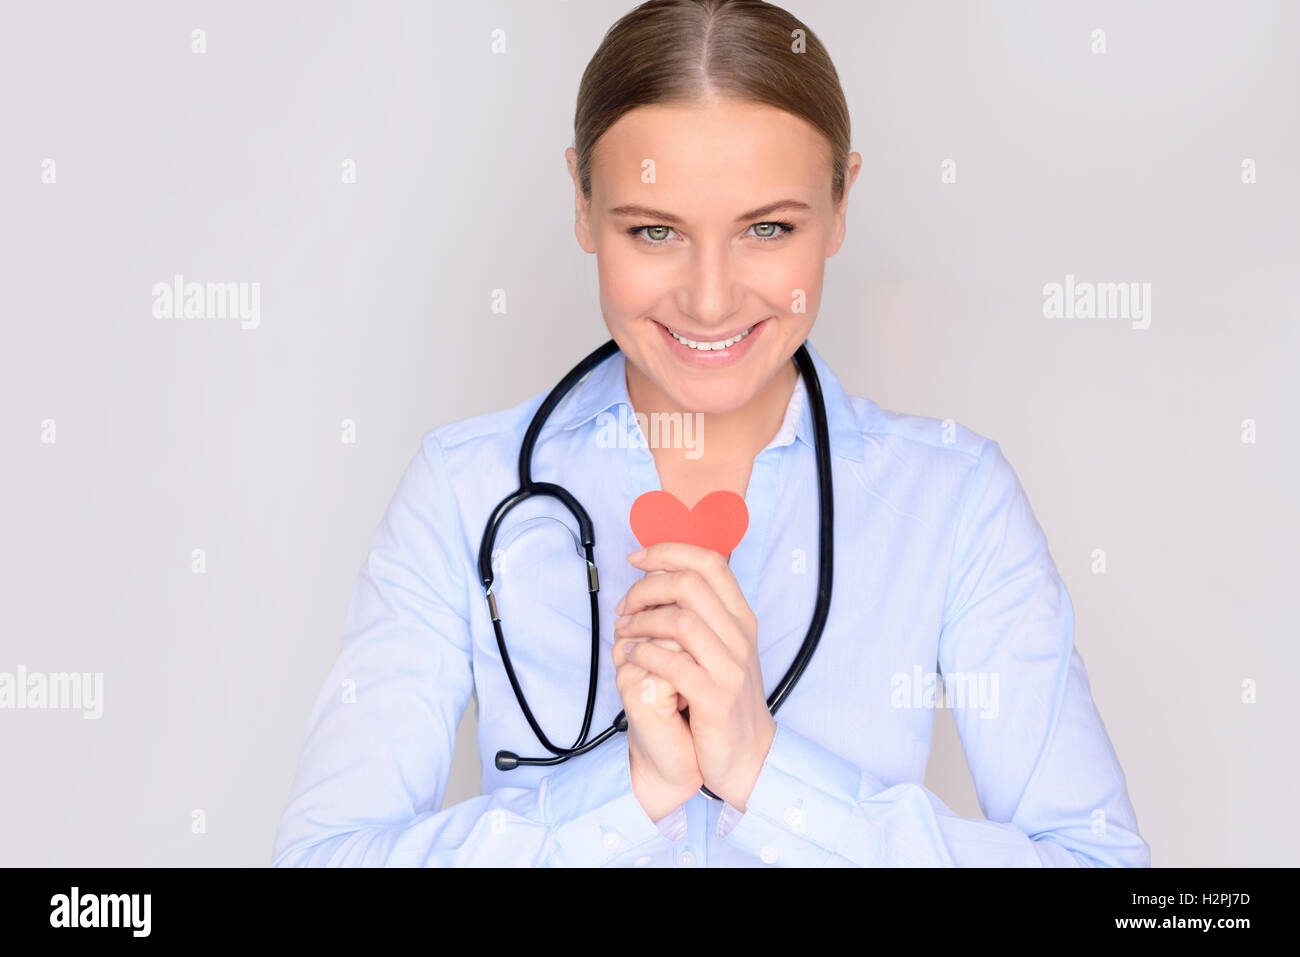 Retrato de una mujer sonriente lindo cardiólogo holding en manos poco papel de corazón y vistiendo bata médica y estetoscopio Foto de stock